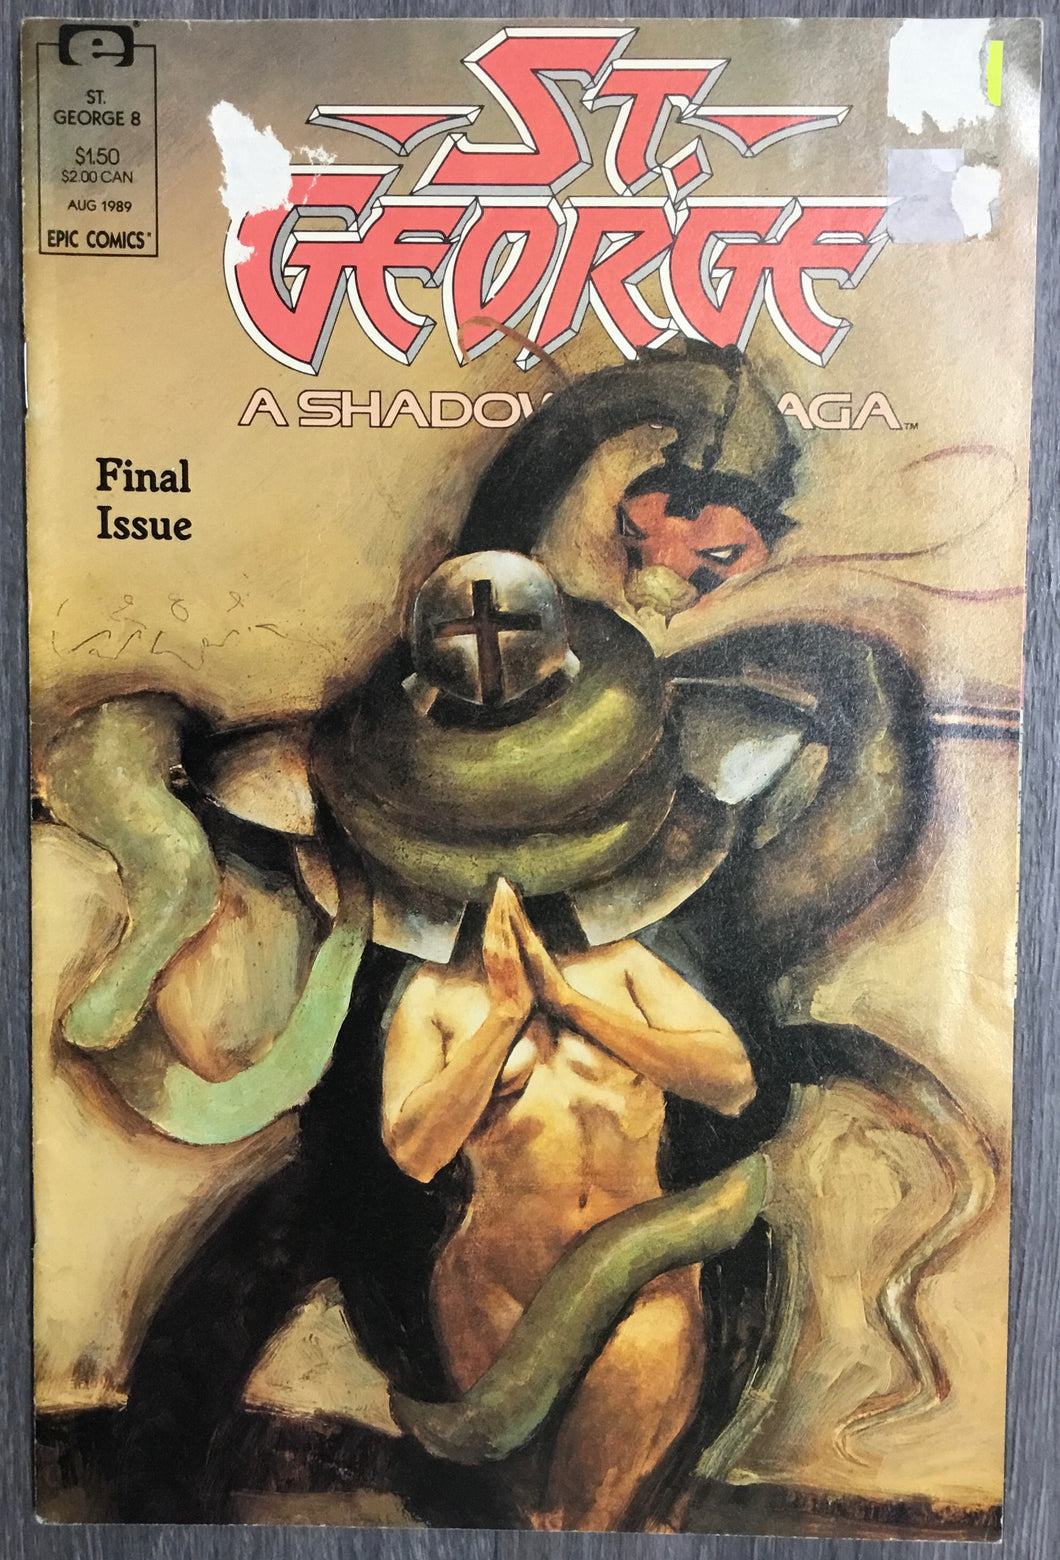 St. George No #8 1989 Epic Comics